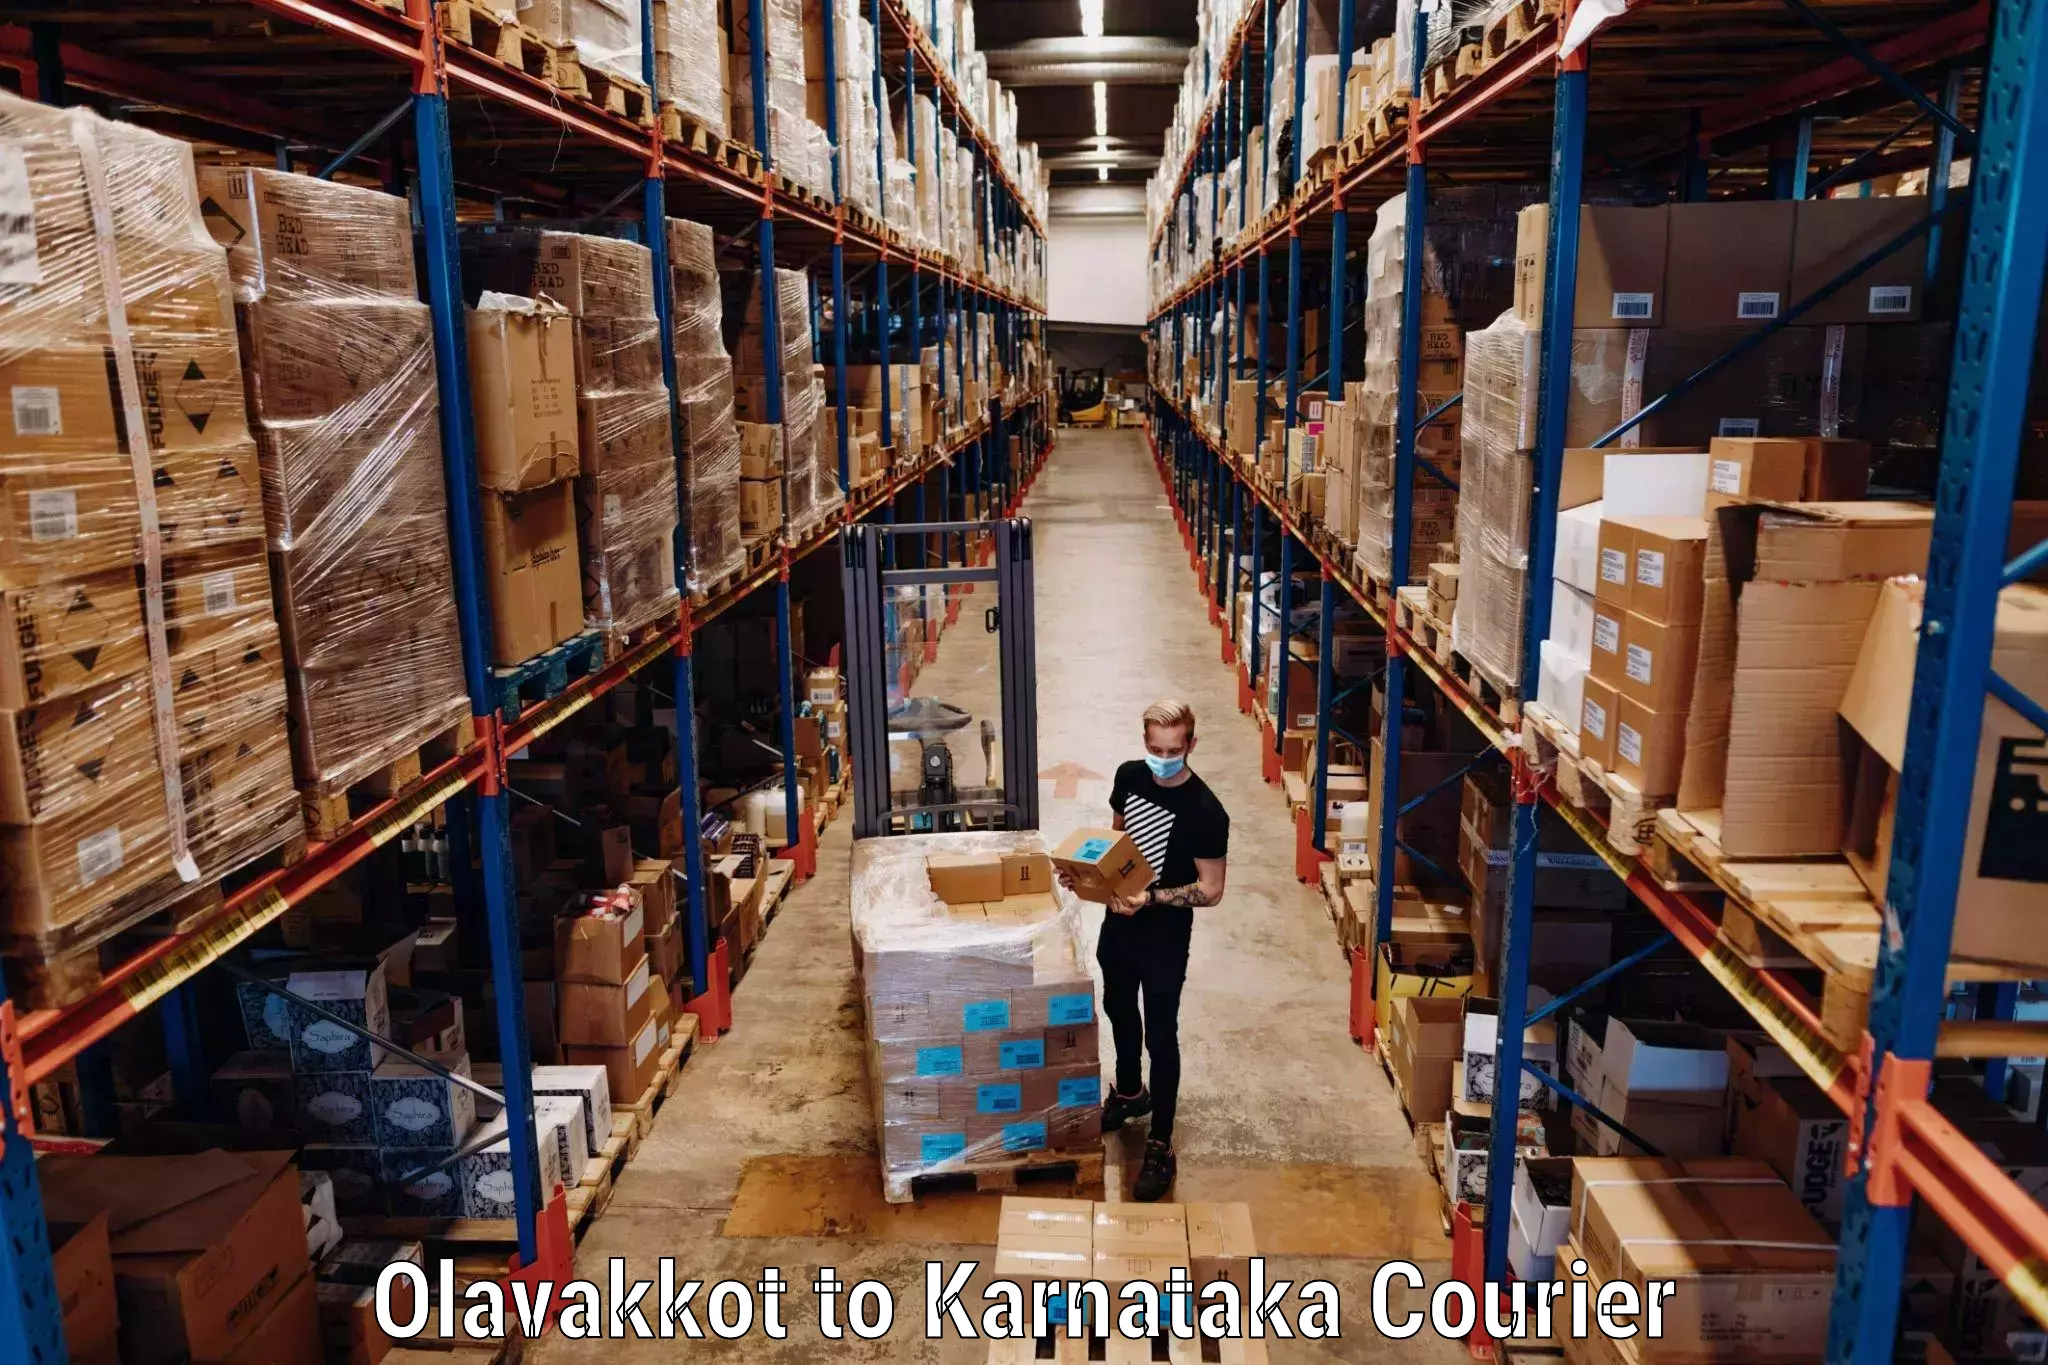 Luggage transport service Olavakkot to Huliyar